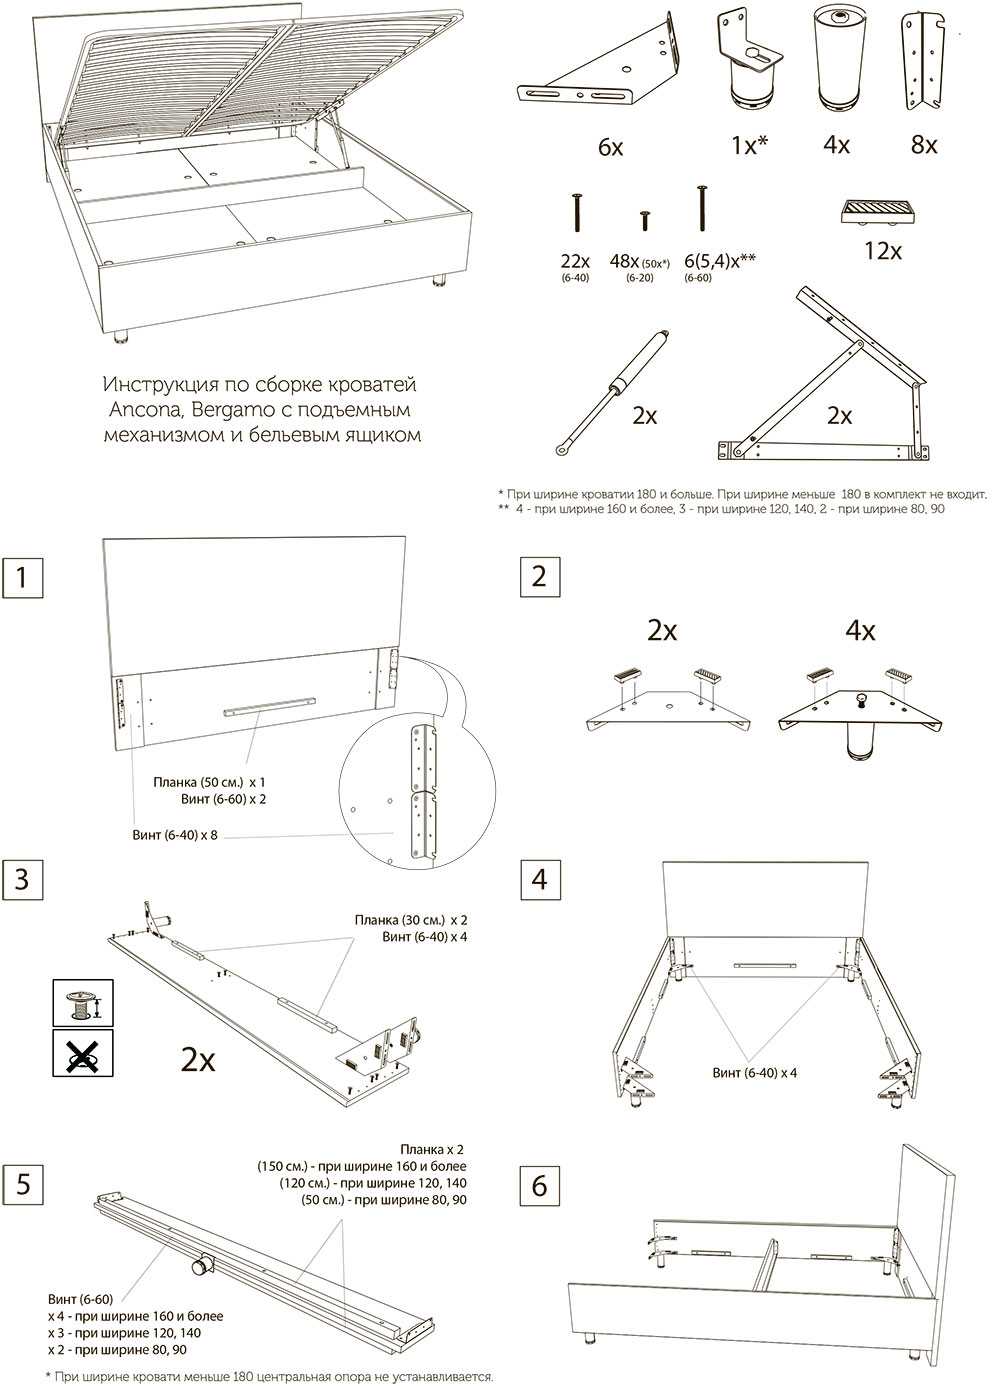 Как собрать кровать с подъемным механизмом своими руками: инструкция по сборке